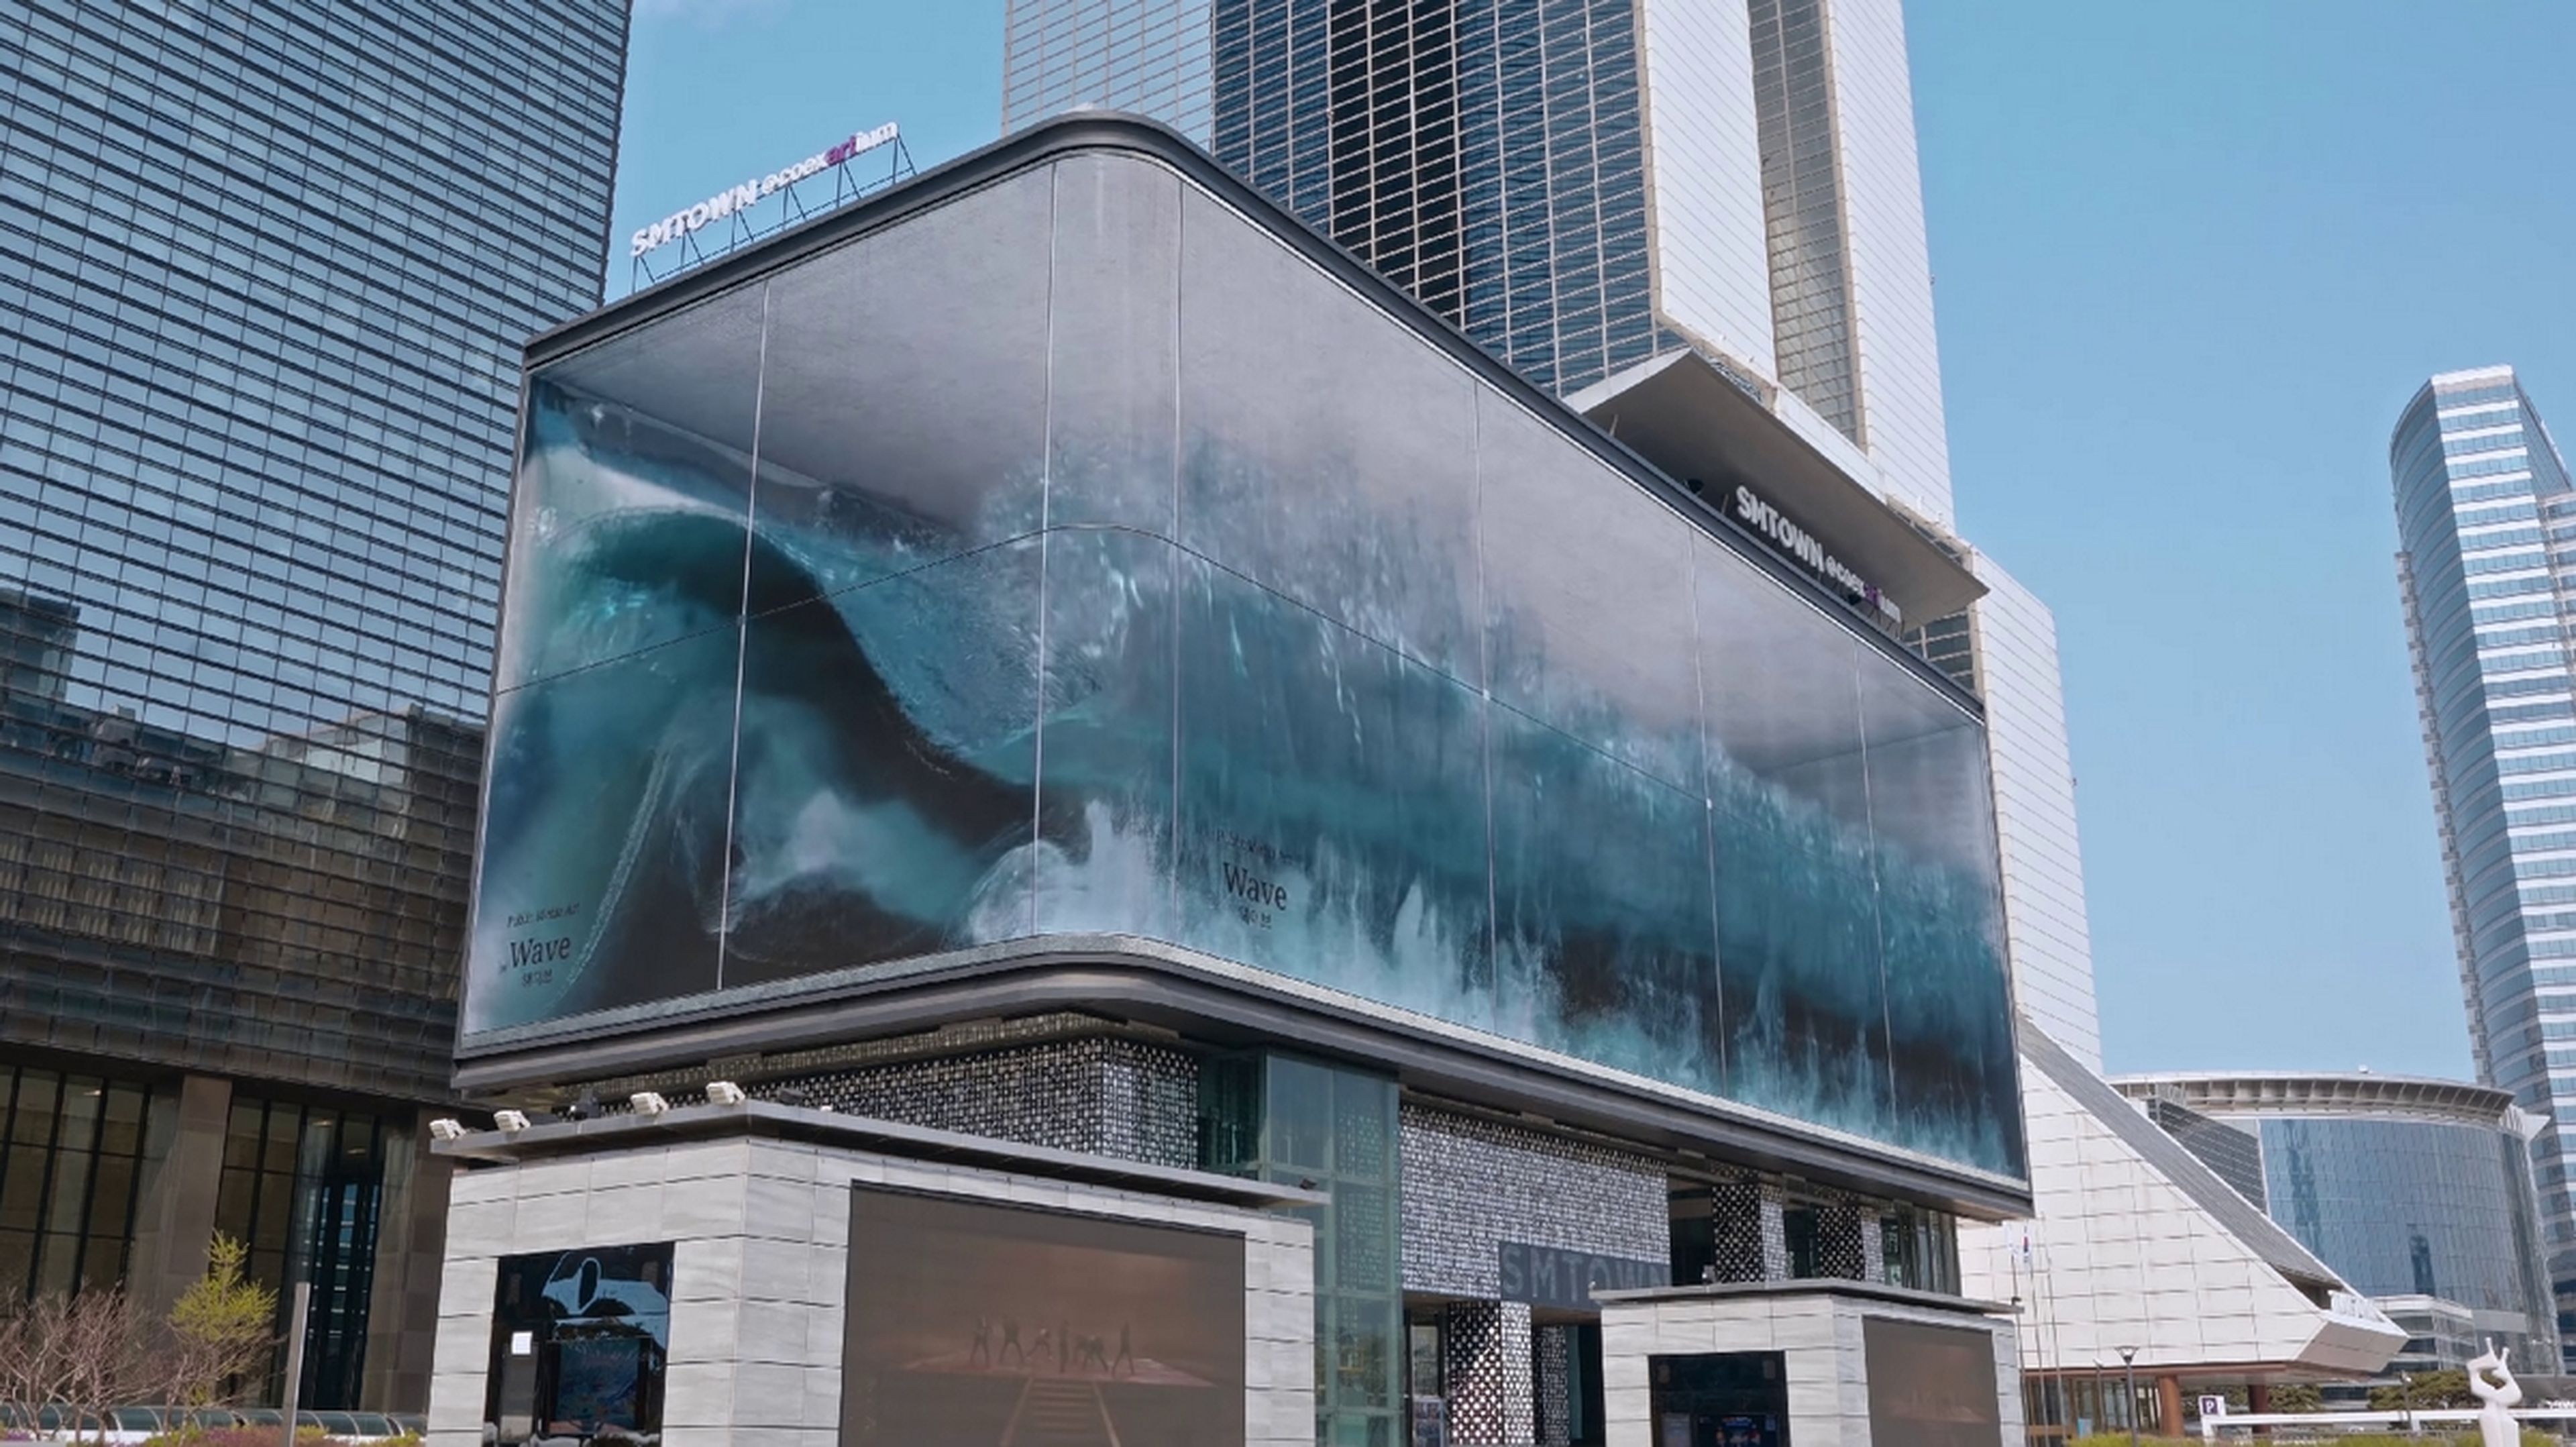 El cartel publicitario con la ilusión anamórfica más grande del mundo es espectacular